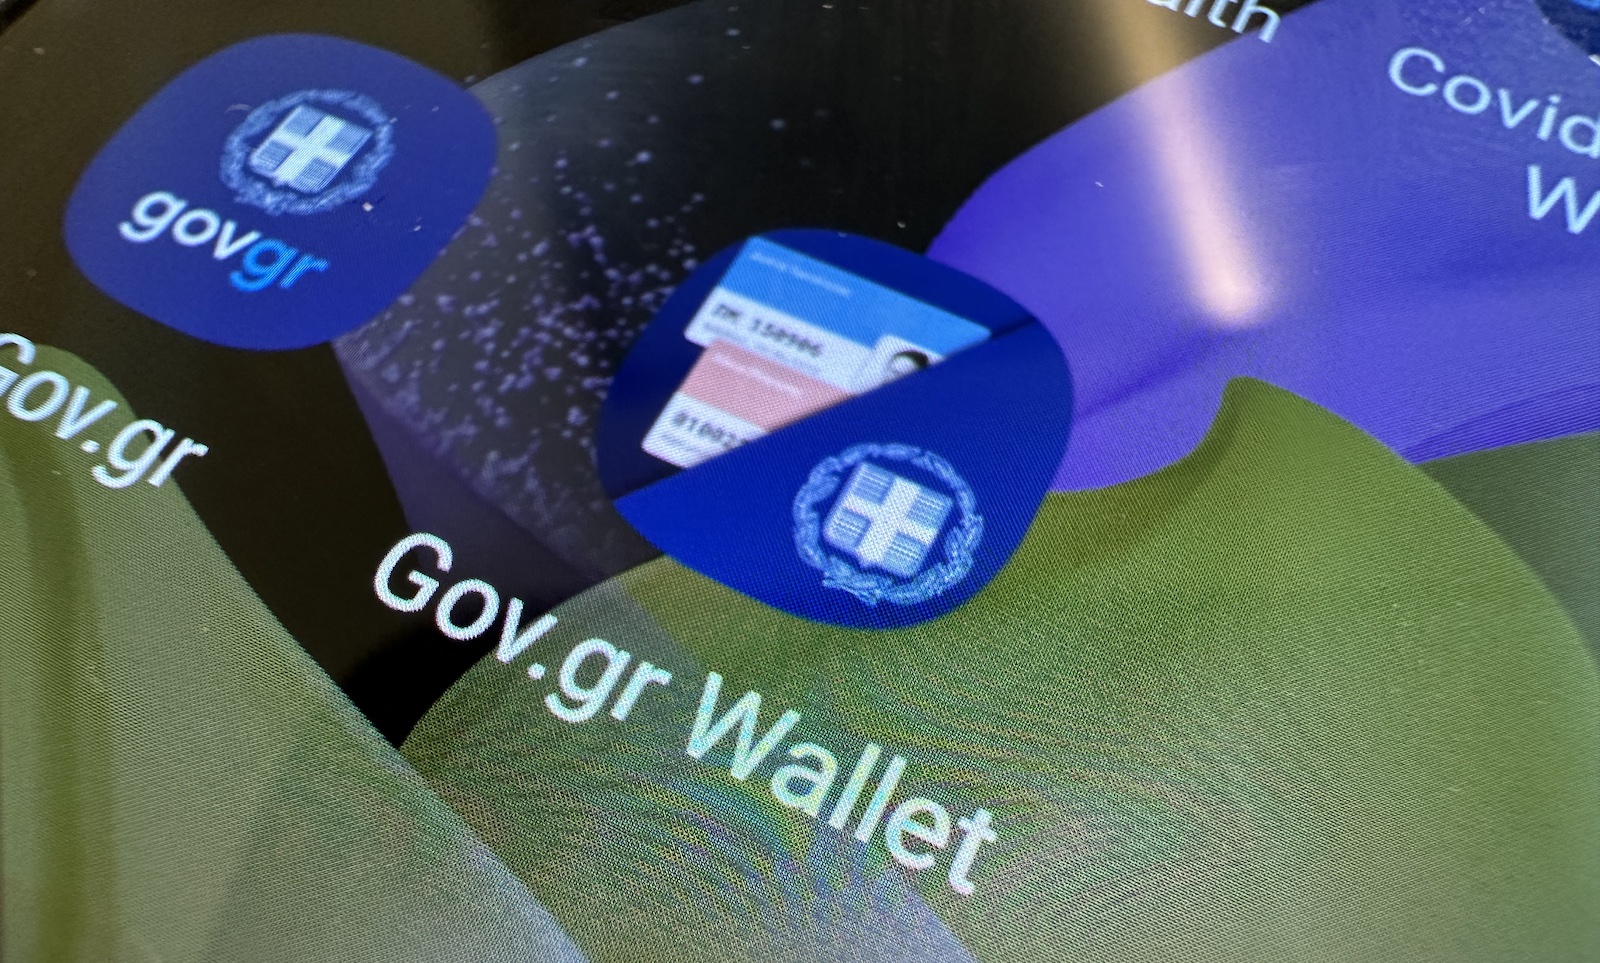 Διαθέσιμη από σήμερα στο Gov.gr Wallet η νέα Ψηφιακή Κάρτα ΔΥΠΑ